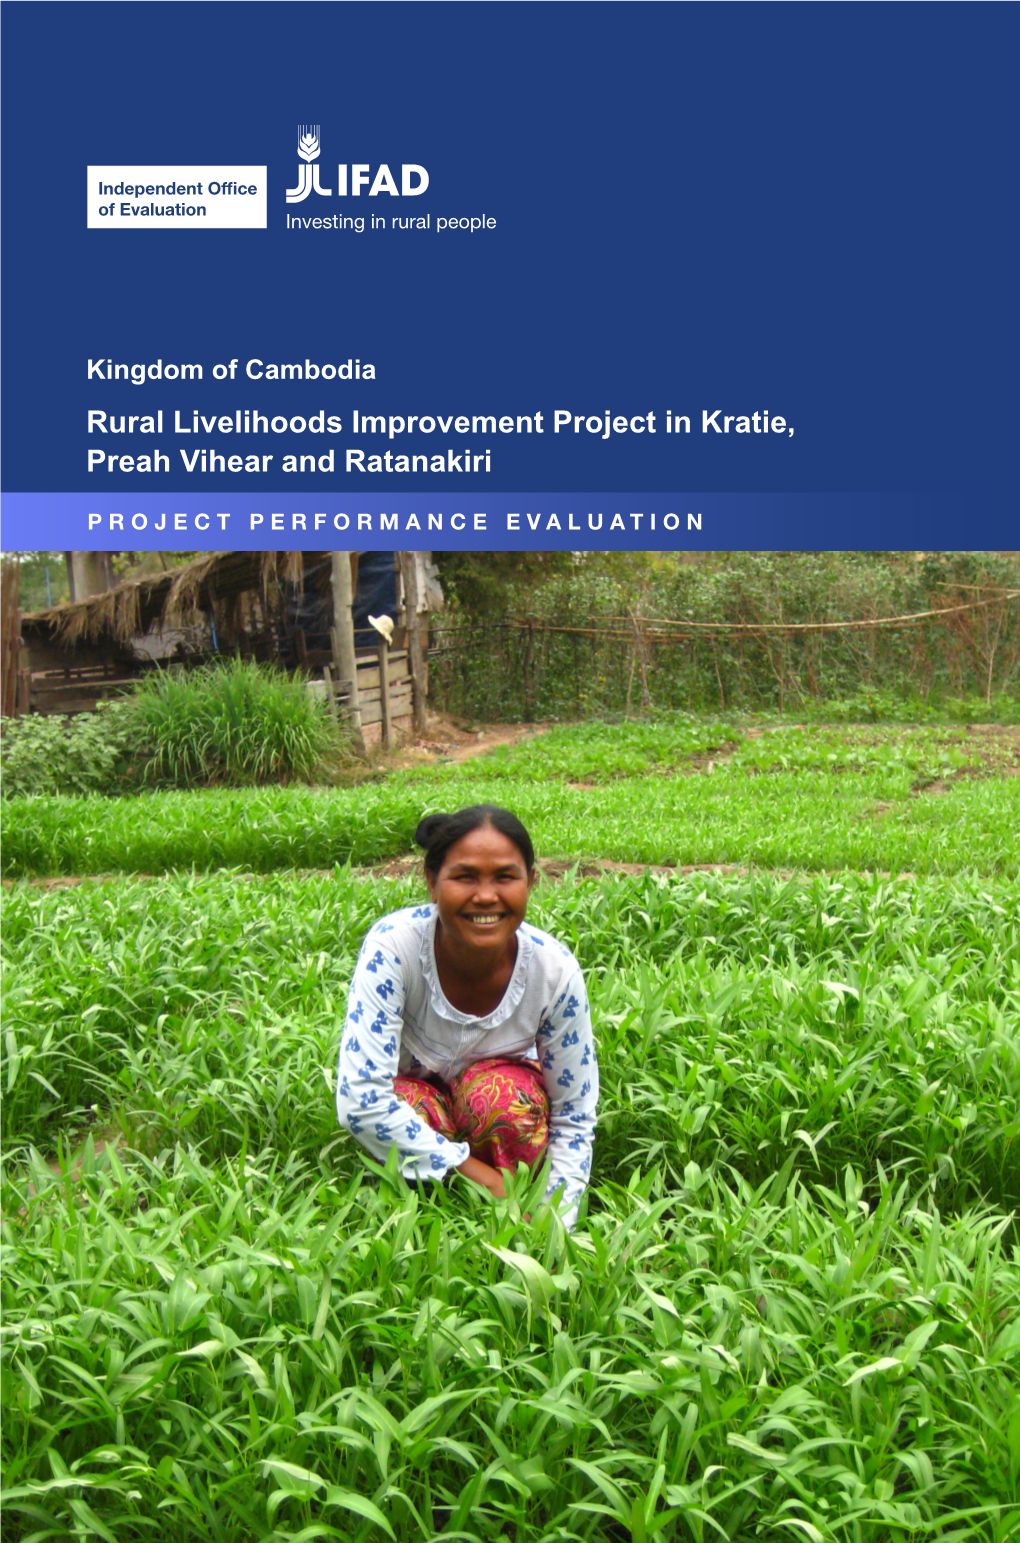 Rural Livelihoods Improvement Project in Kratie, Preah Vihear and Ratanakiri